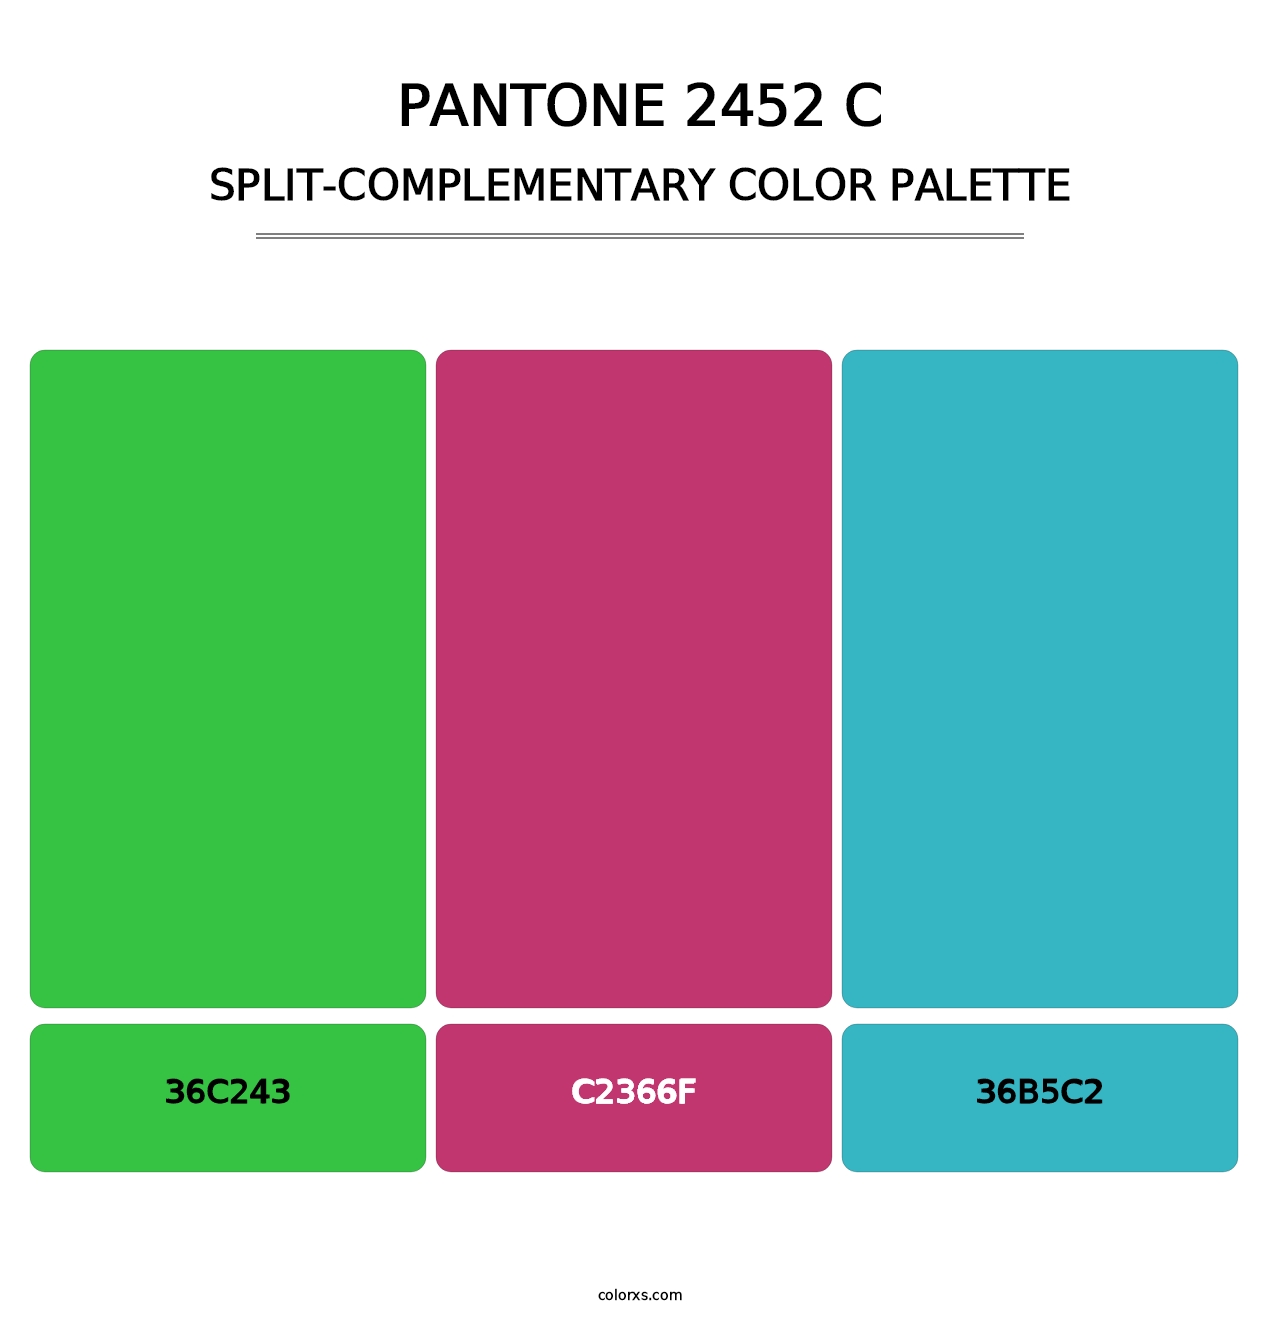 PANTONE 2452 C - Split-Complementary Color Palette